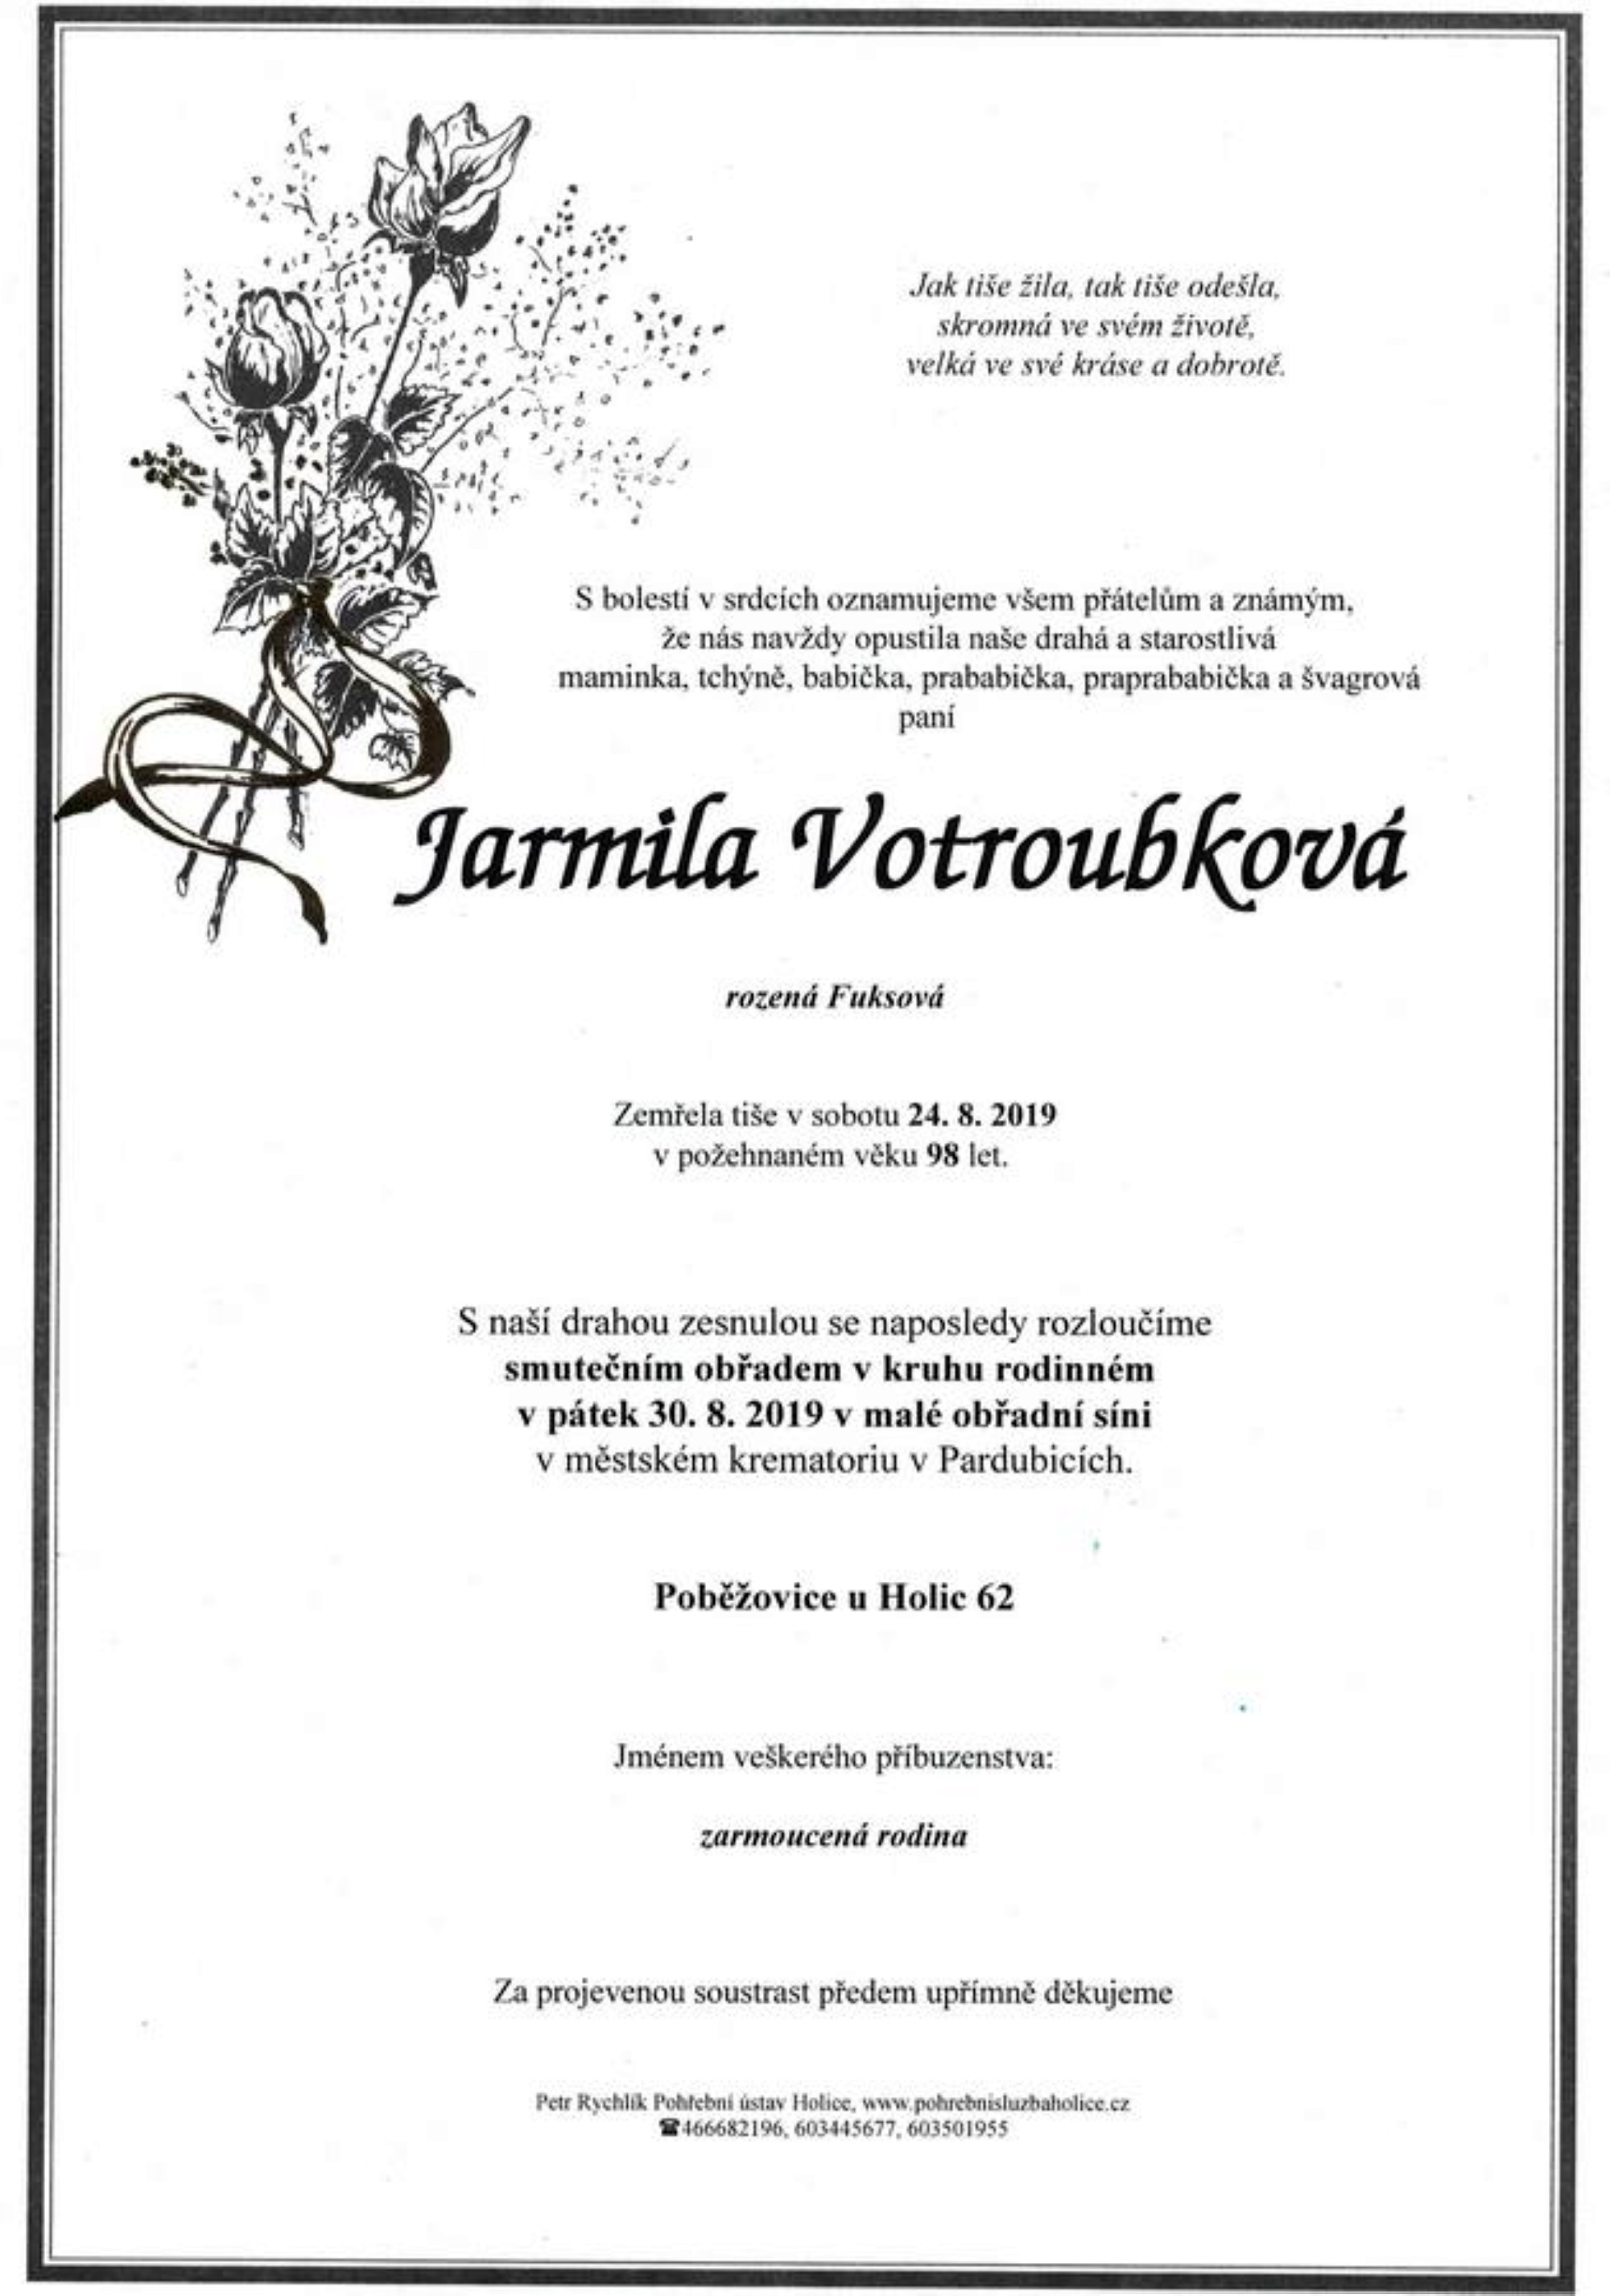 Jarmila Votroubková